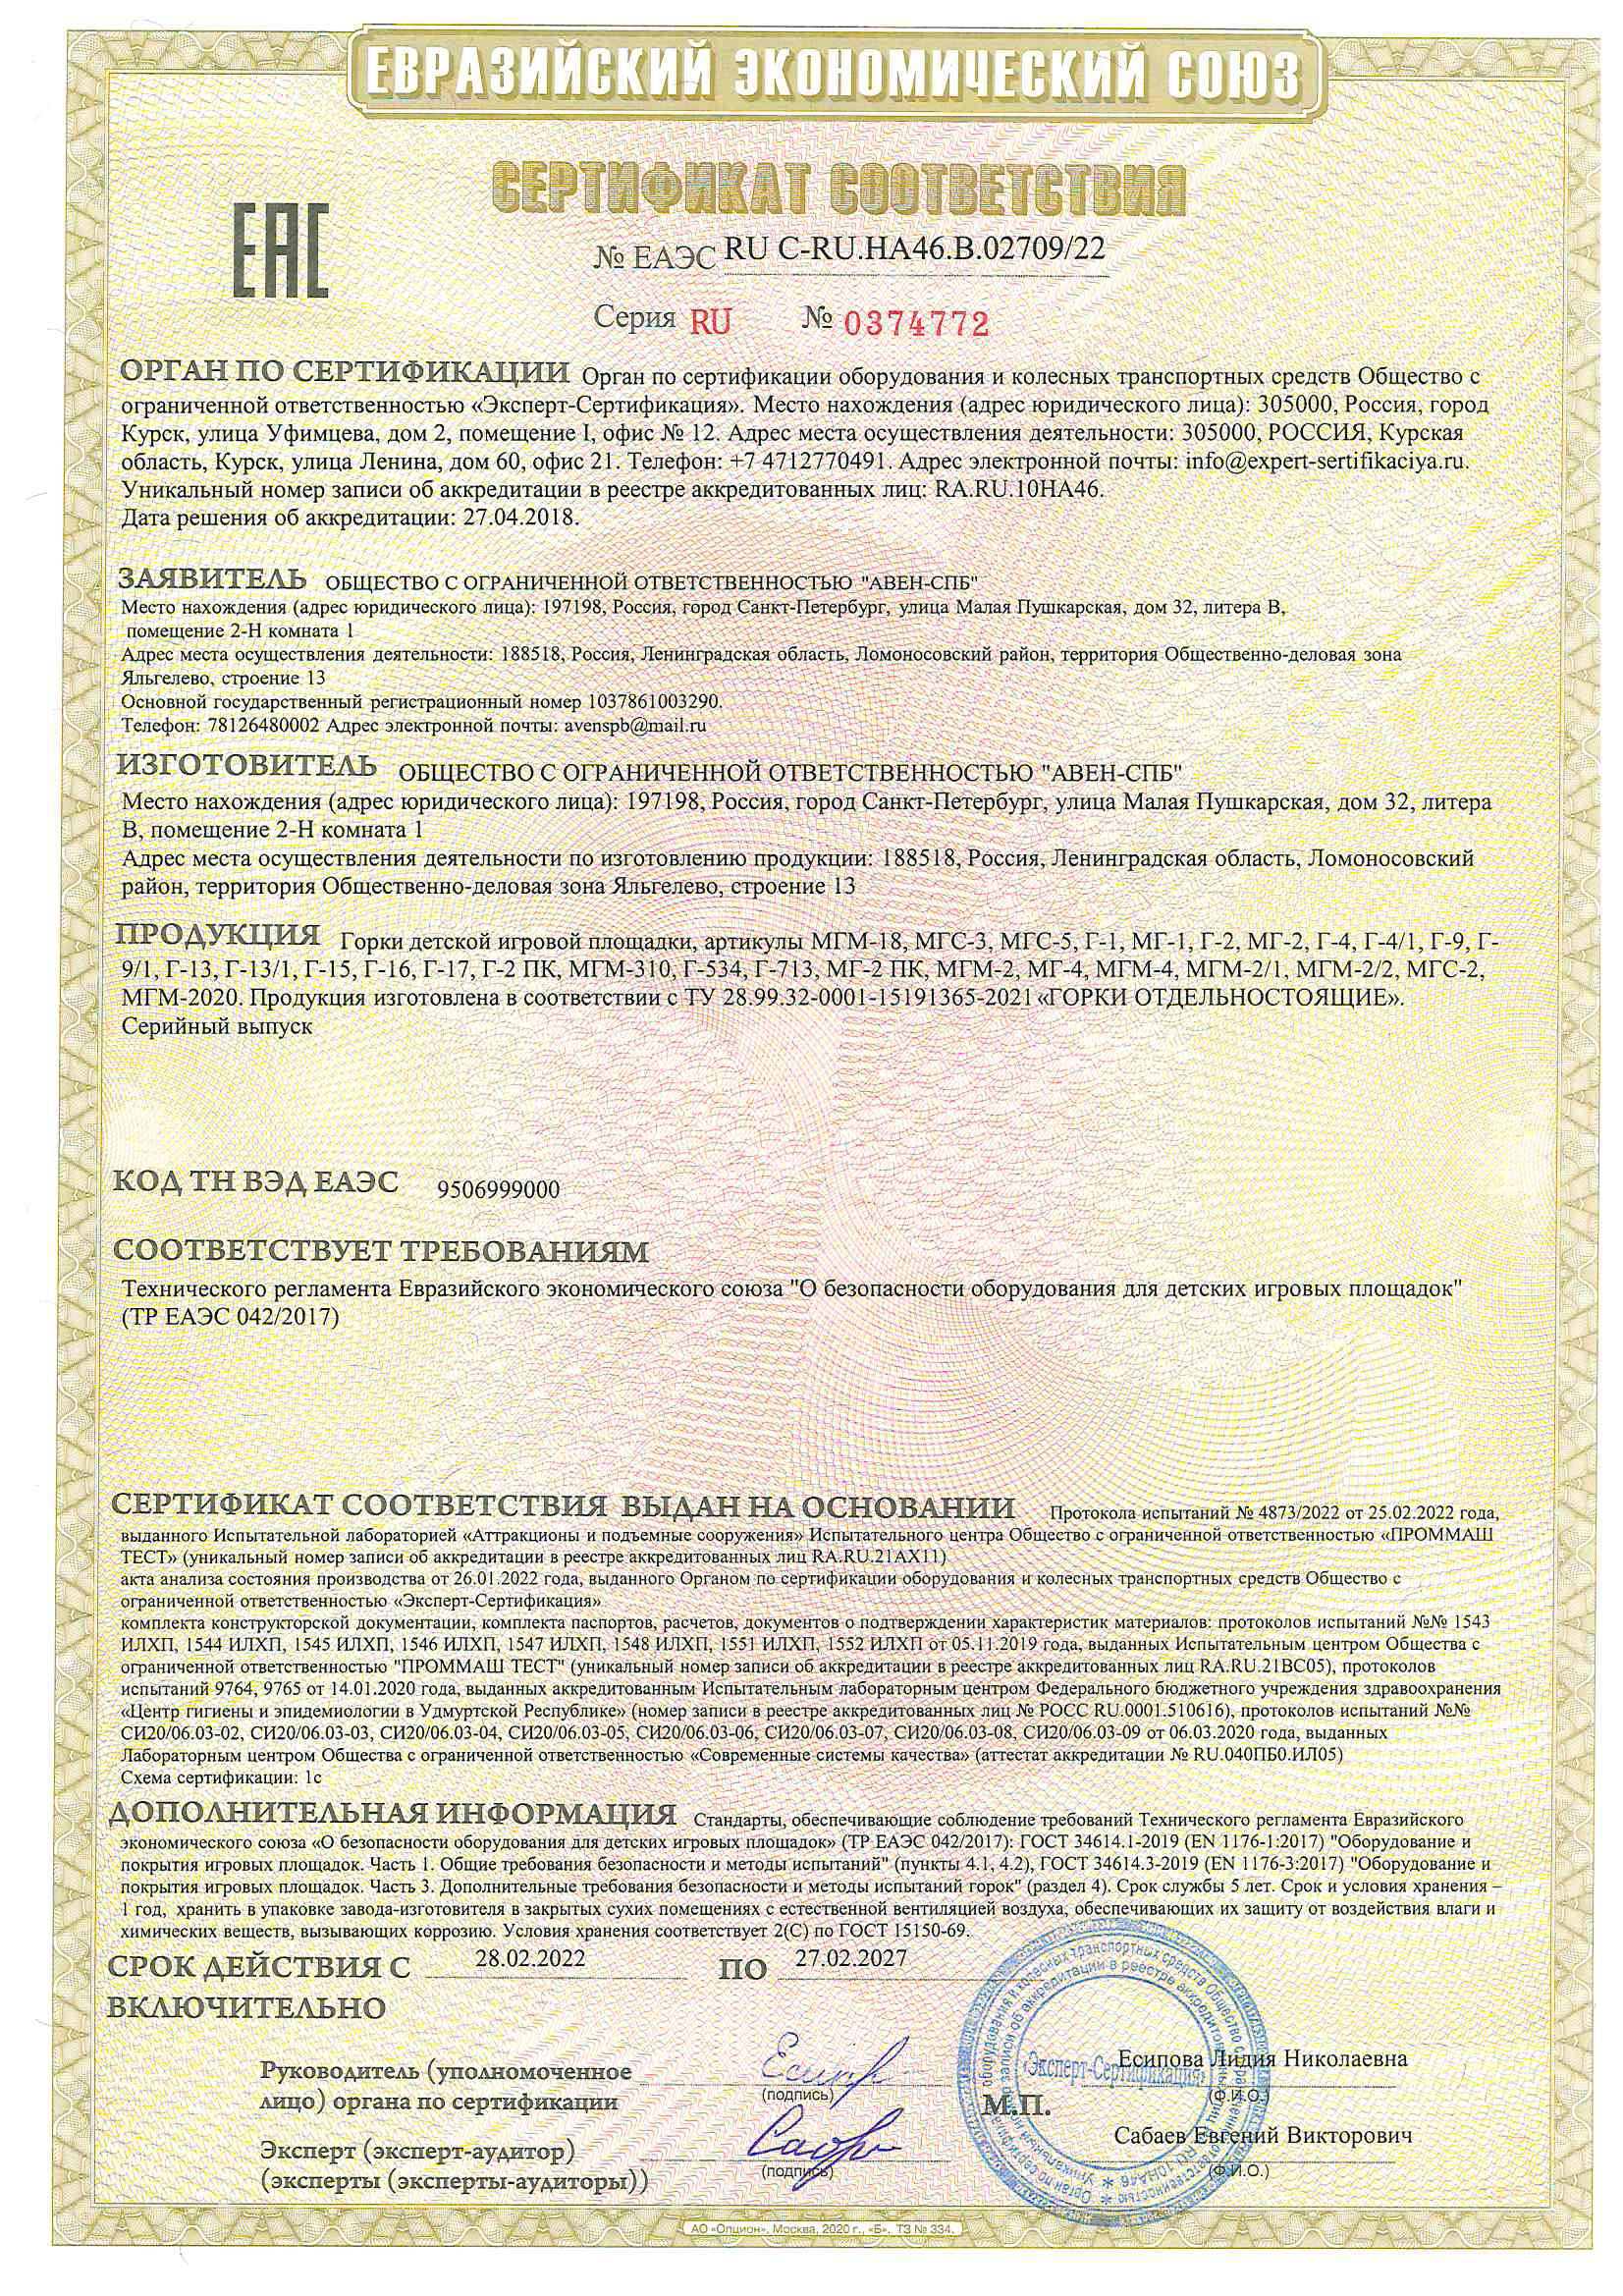 Сертификат   соответствия № ЕА ЭС-RU-C-RU.HA46.B.02709/22 cерия RU № 0374772 на детское игровое оборудование  горки 